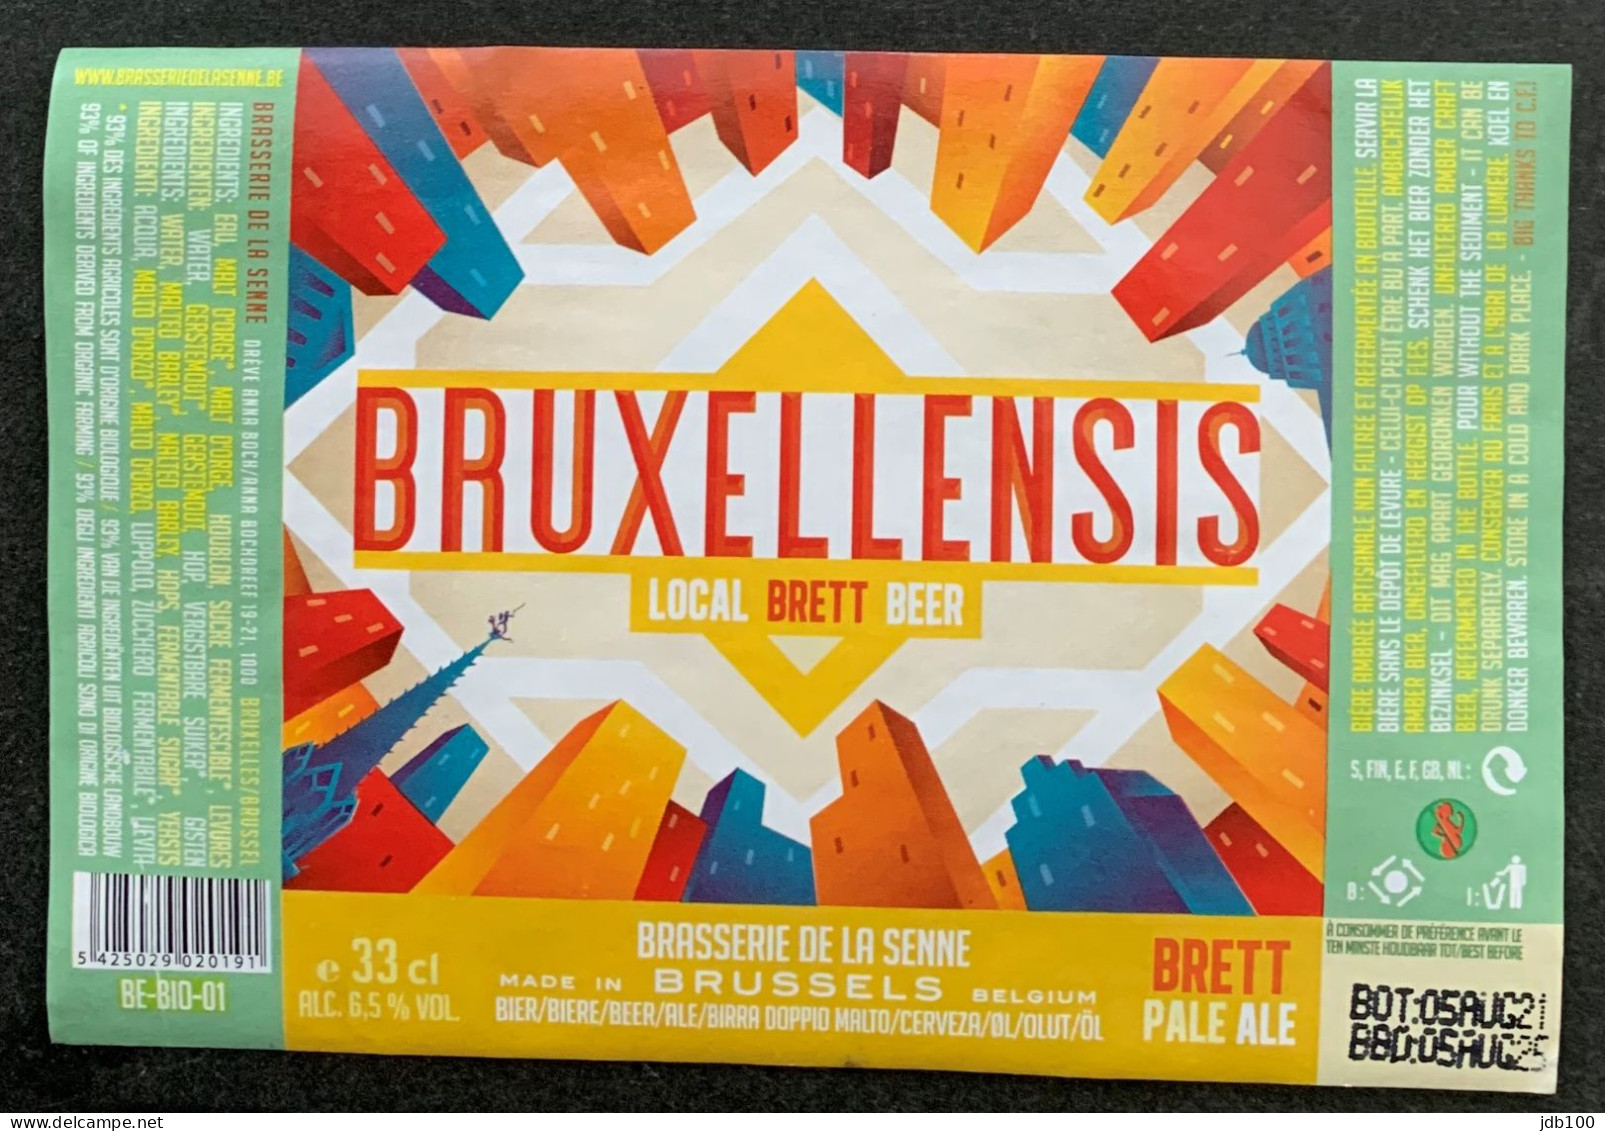 Bier Etiket (5g2), étiquette De Bière, Beer Label, Bruxellensis Brouwerij De La Senne - Bière